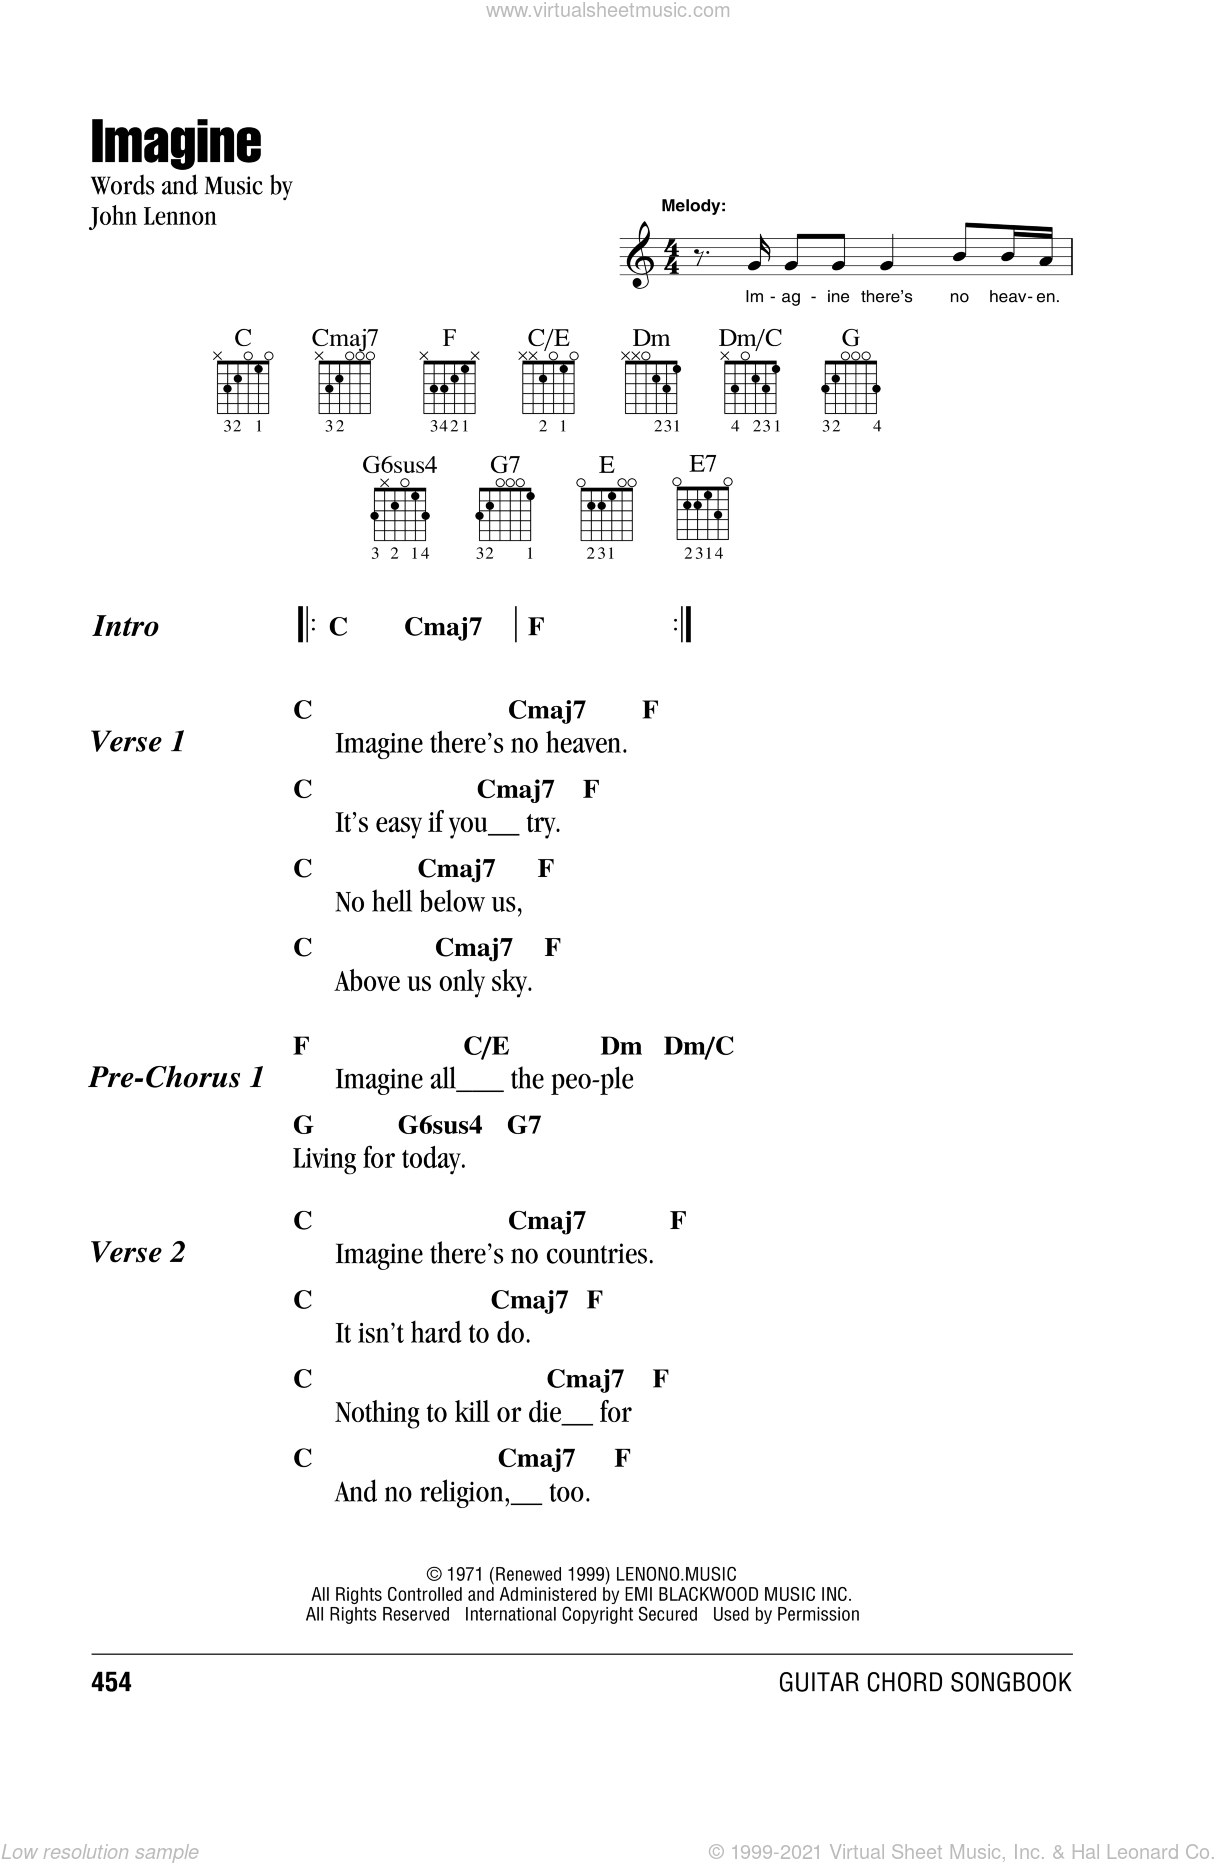 Lennon - Imagine sheet music for guitar (chords) PDF